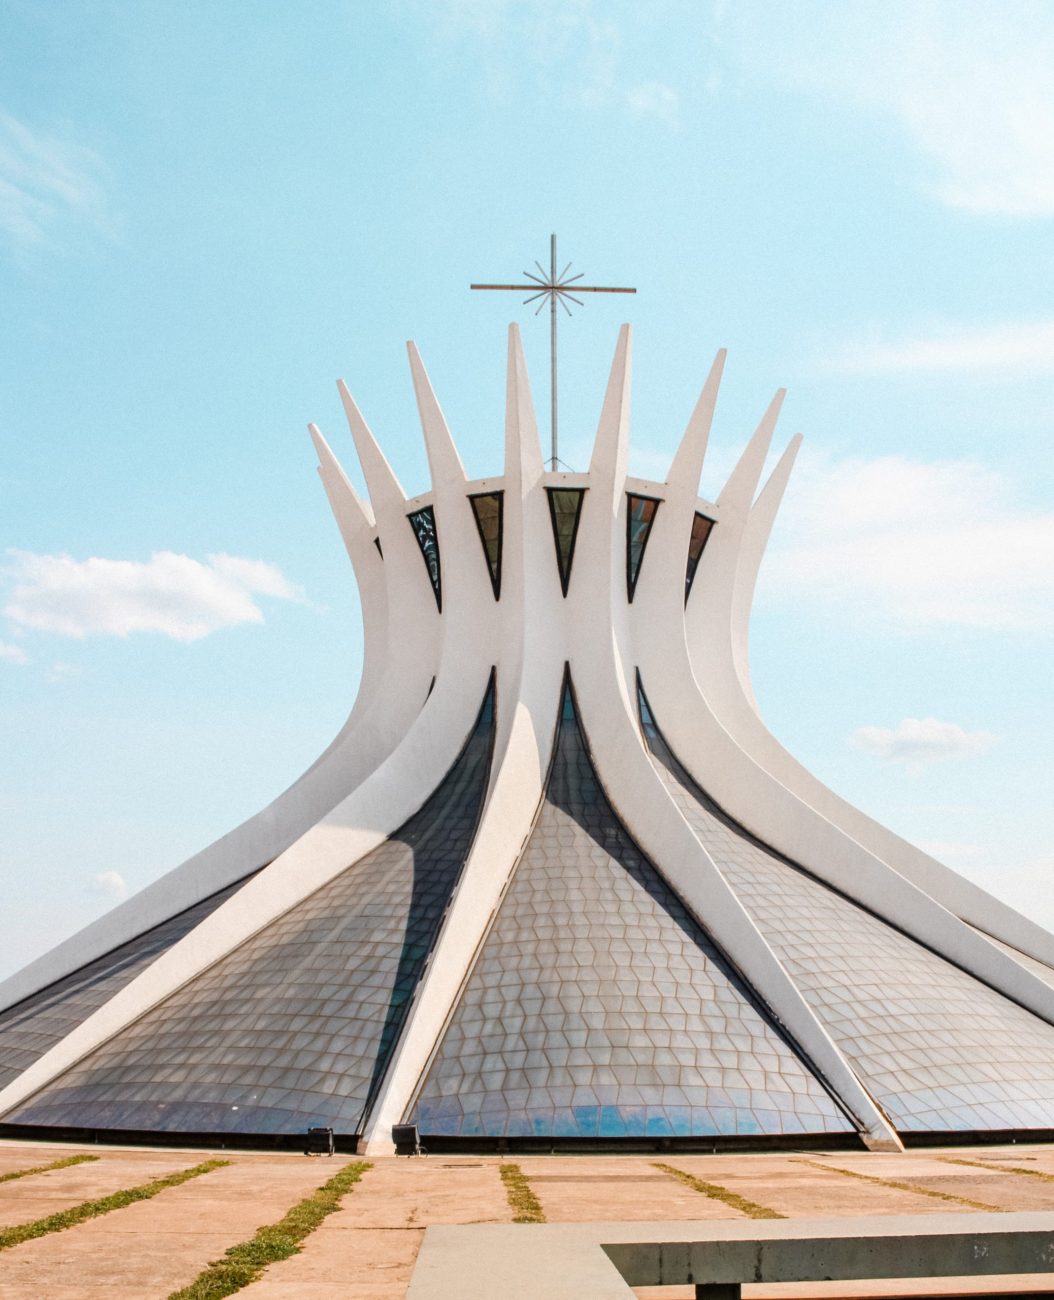 Cathedral of Brasília, Brazil-unsplash